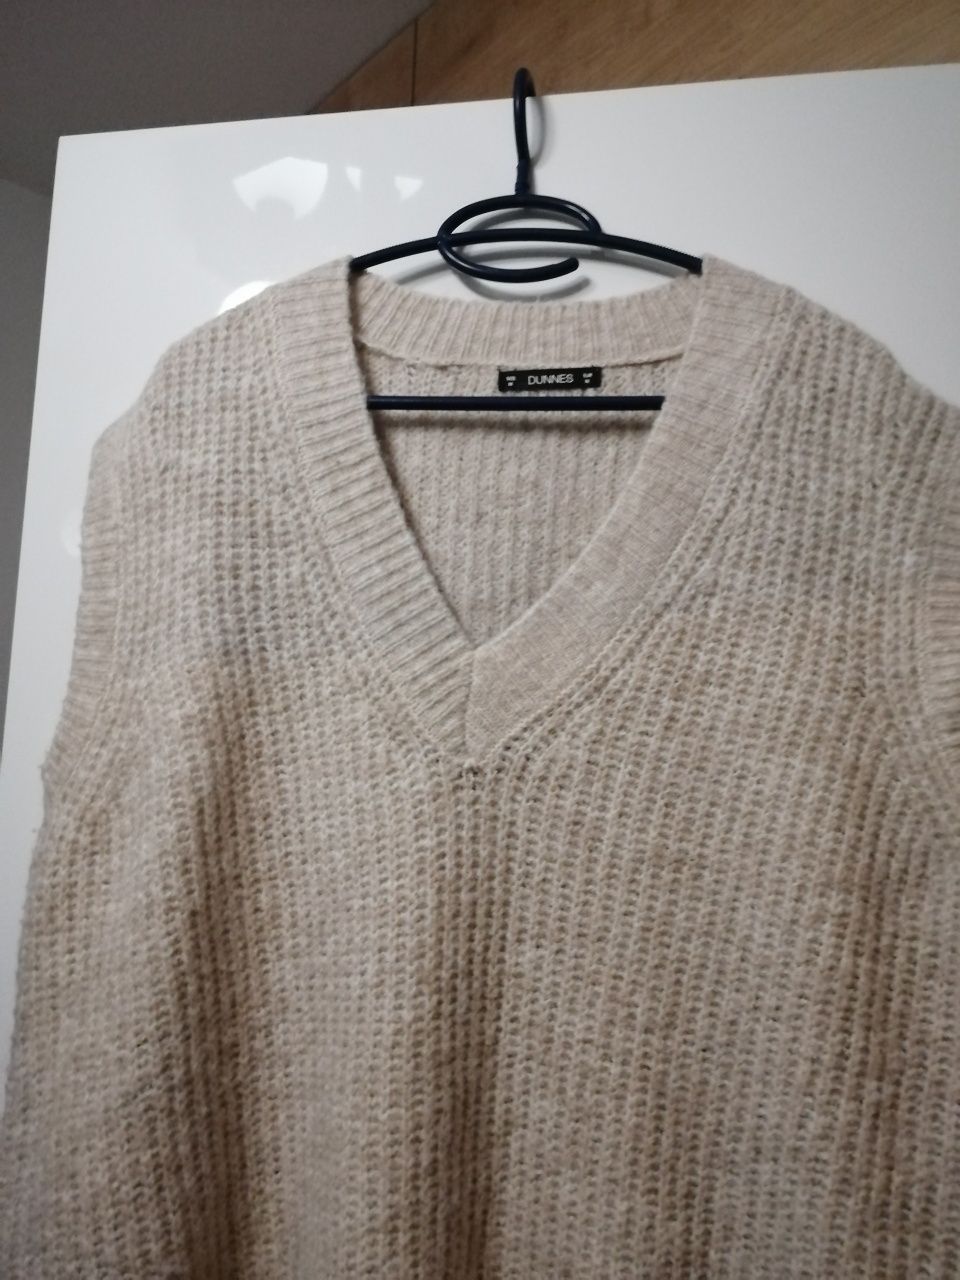 Bezrękawnik swetrowy beżowy kamizelka 42/XL Dunnes Stores H&M